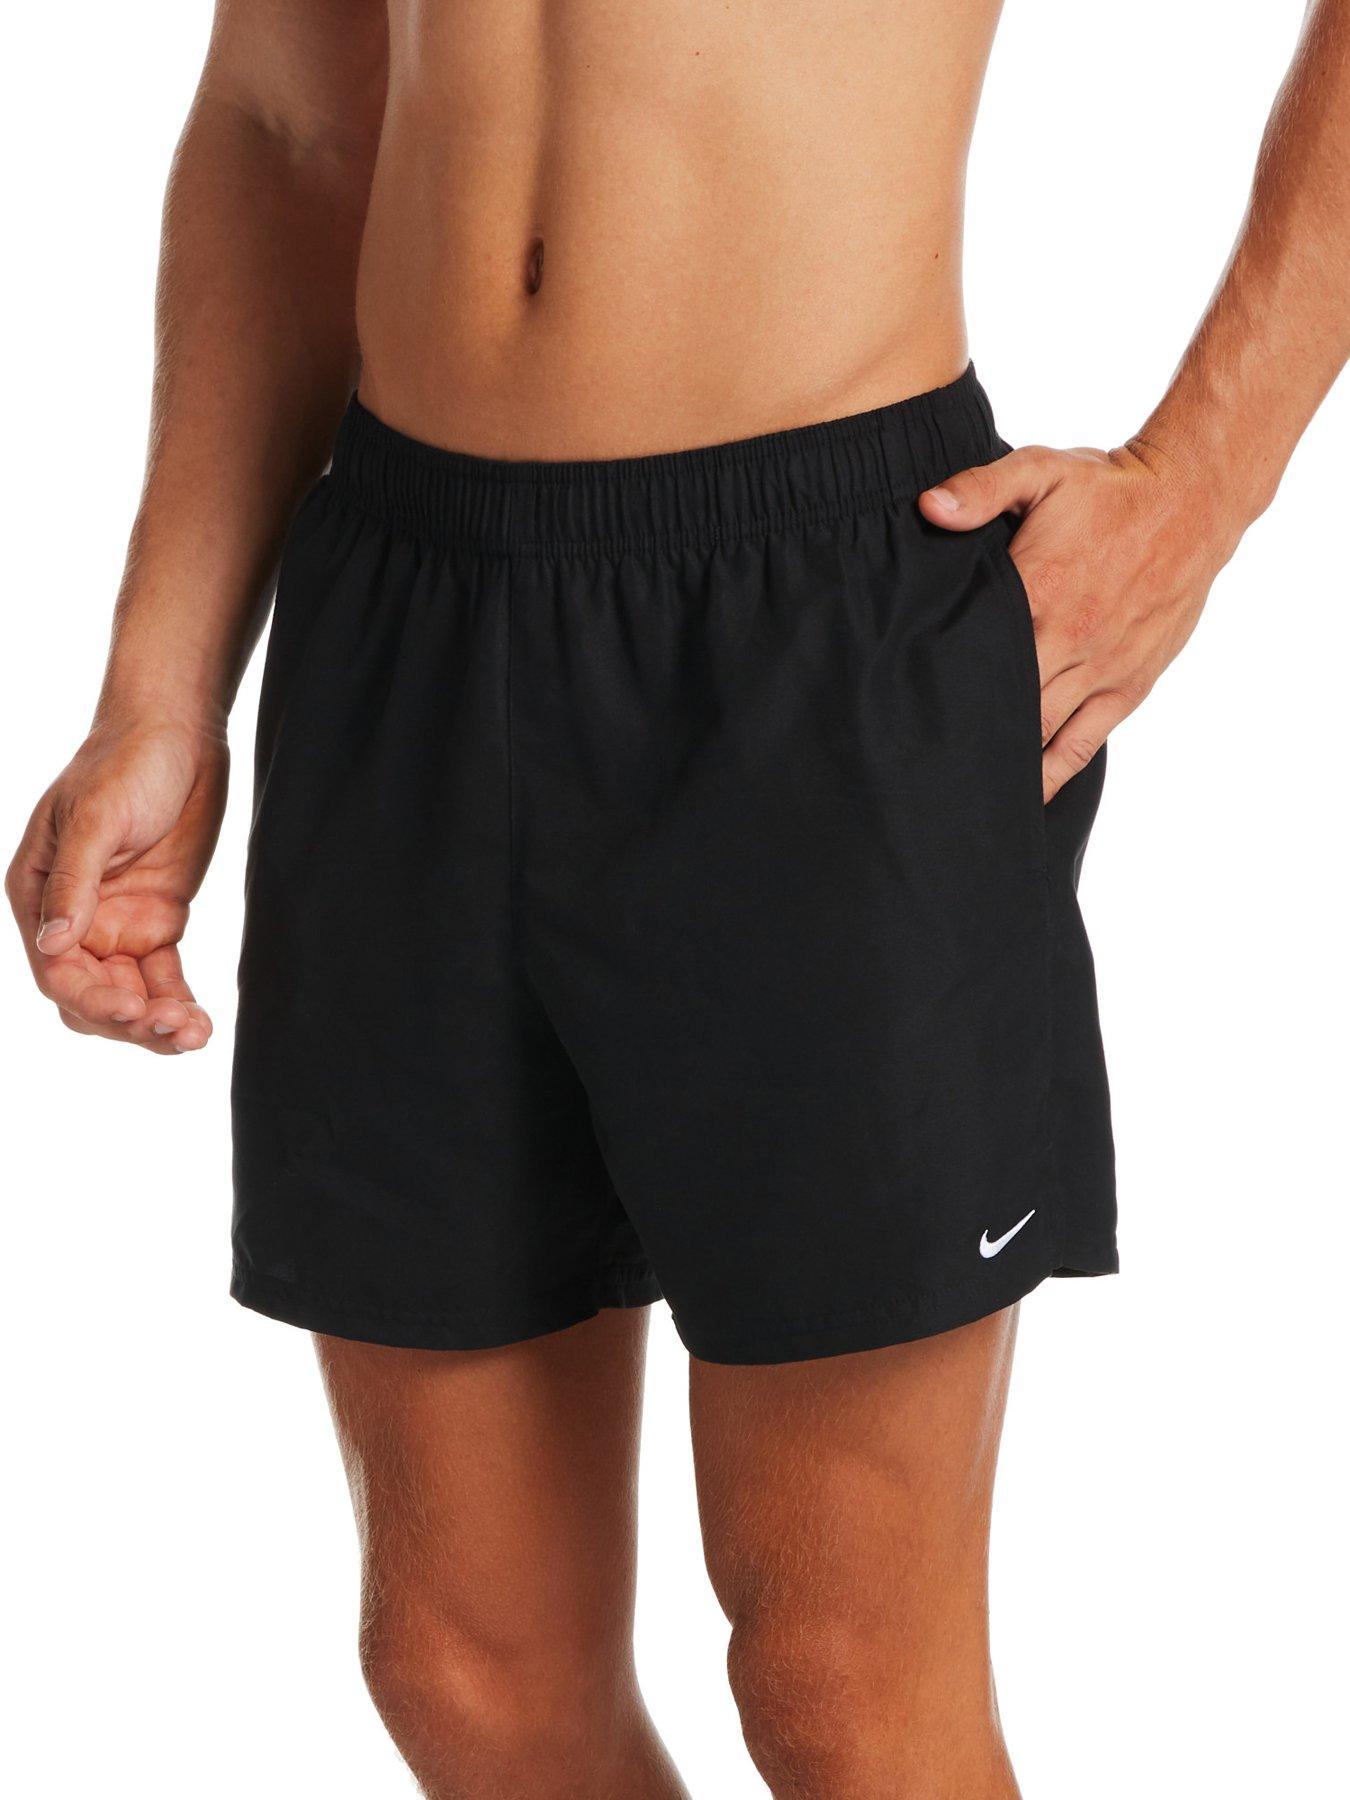 Nike Yoga Dri-FIT Black Men's Short Sleeve Top, Men's Fashion